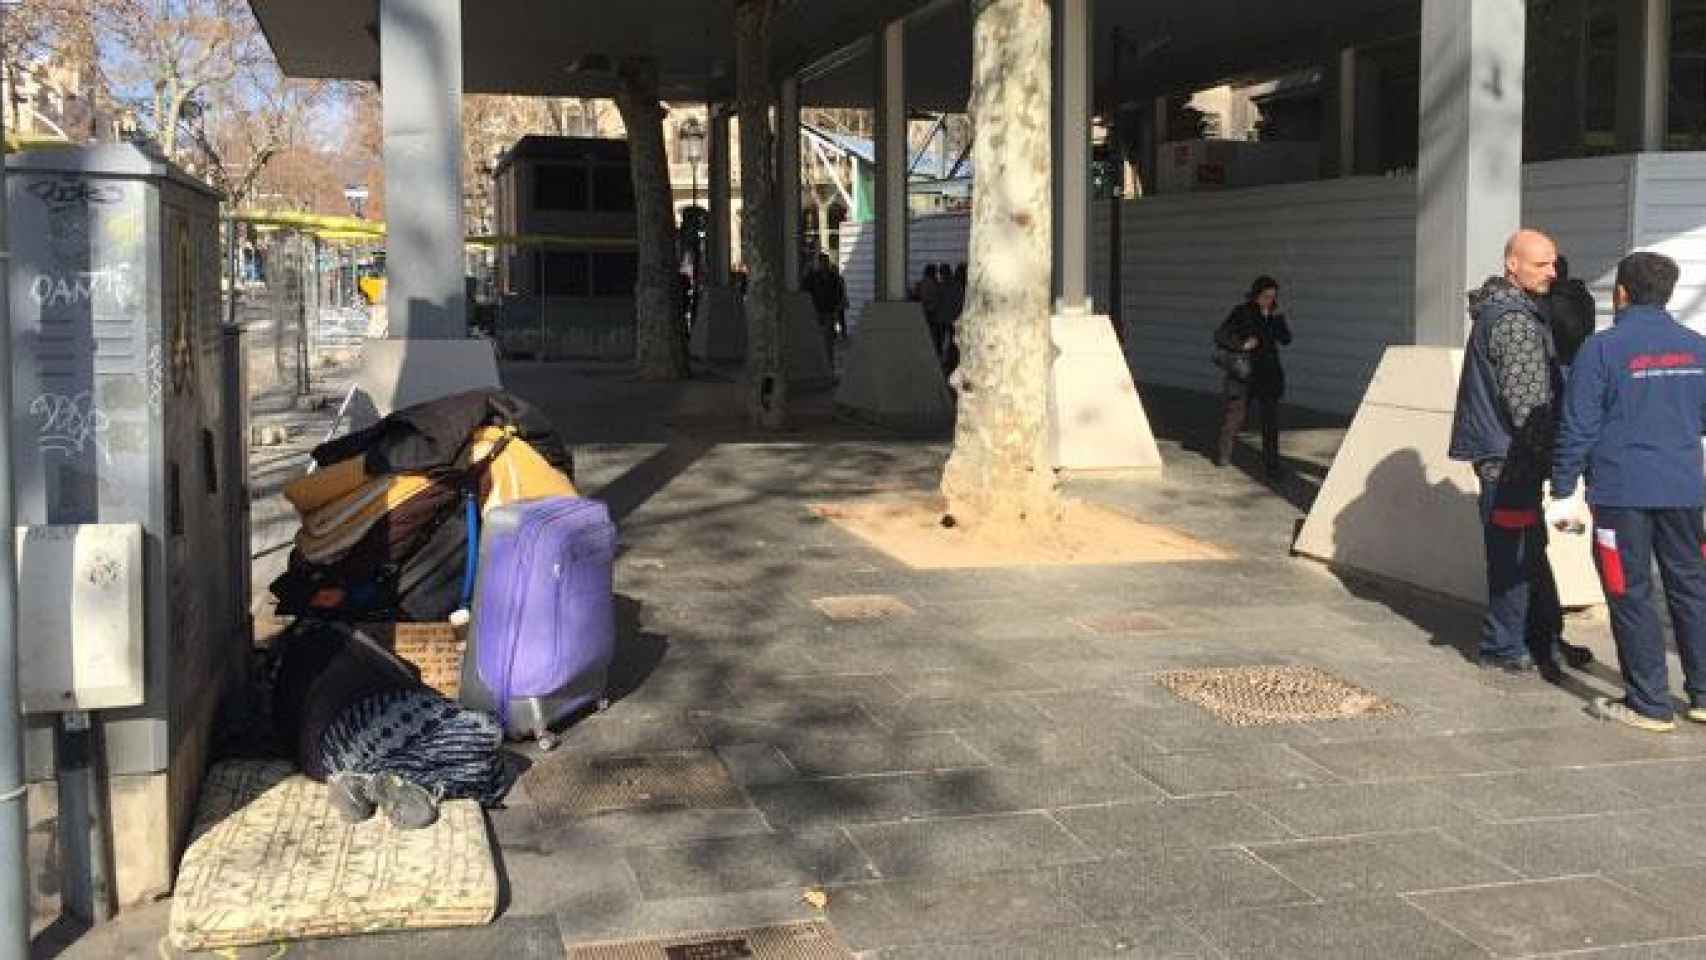 Una persona sin hogar en el centro de Barcelona / CG